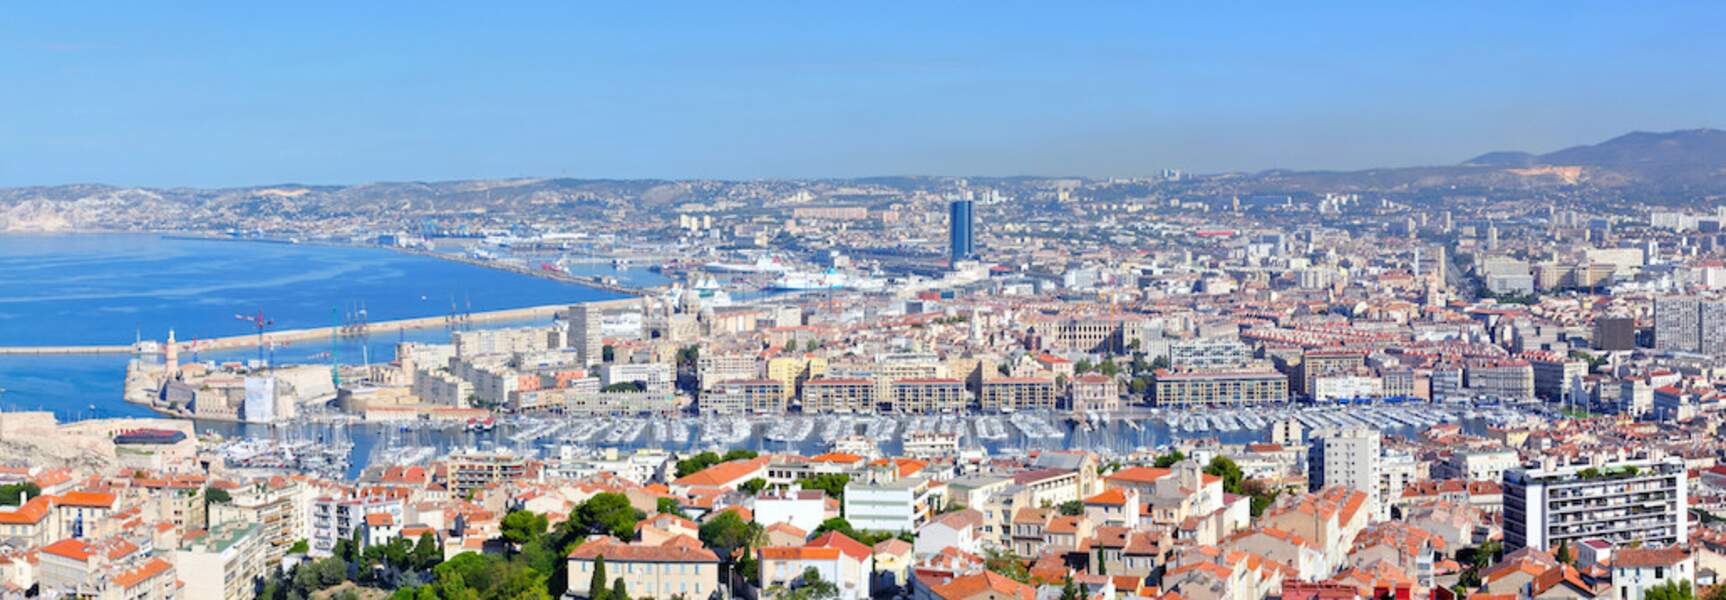 1. Marseille